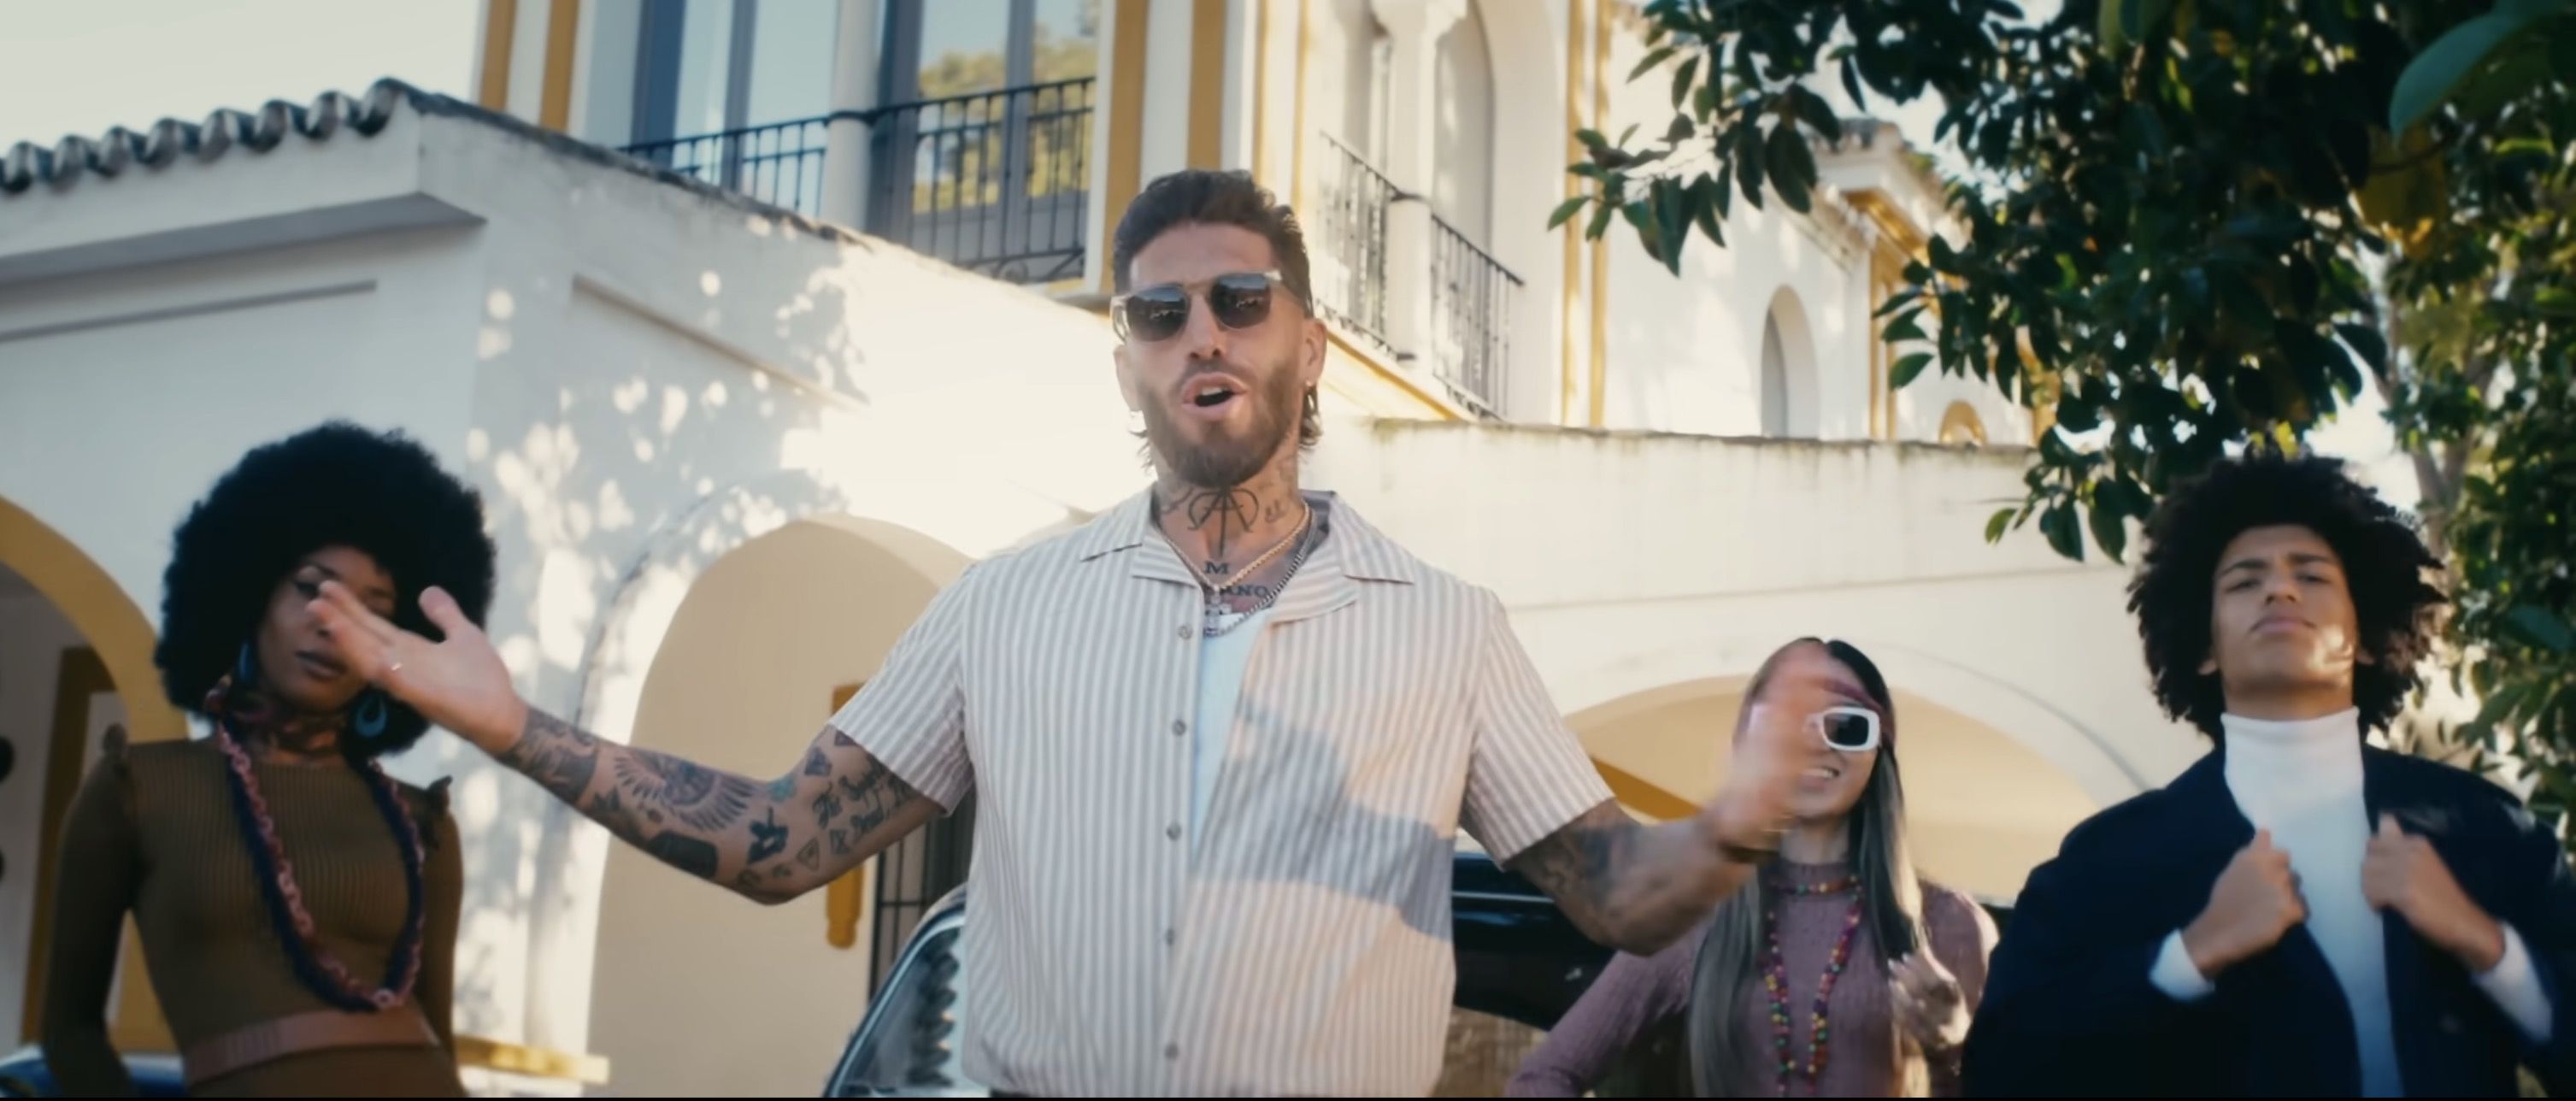 Pasaje del videoclip 'No me contradigas' en el participa Sergio Ramos junto a Los Yakis